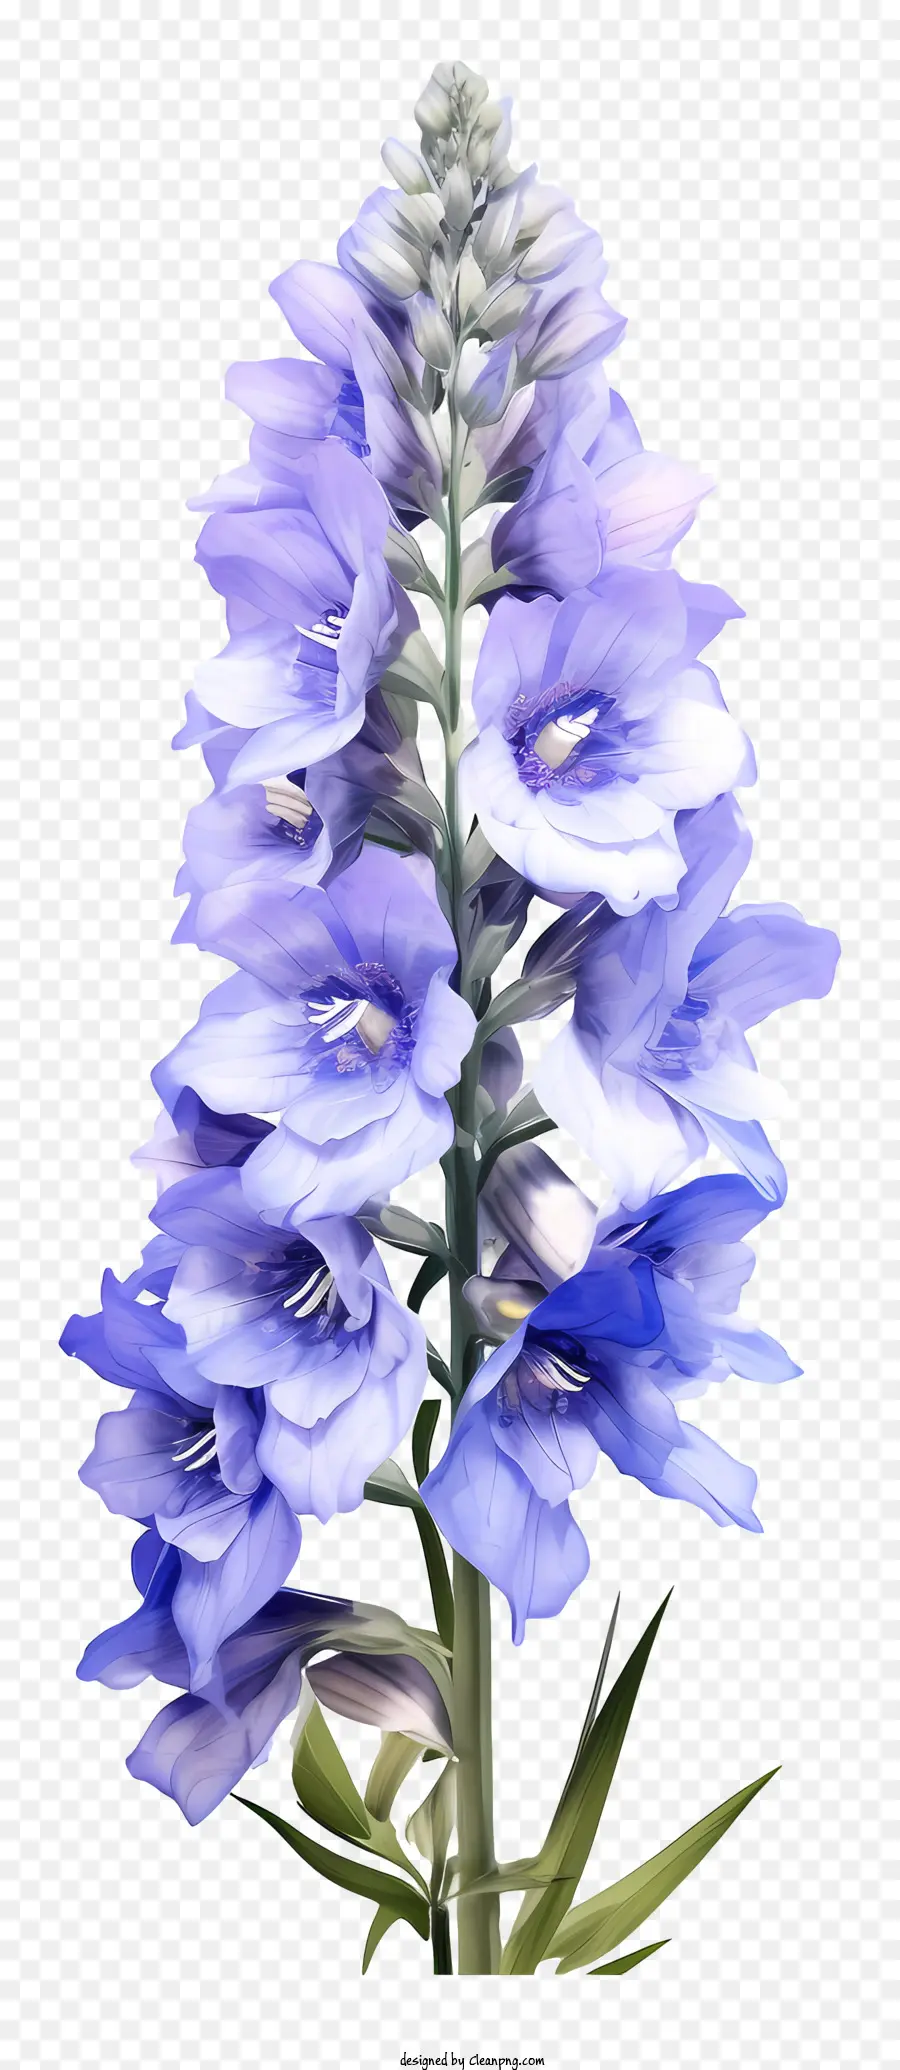 Blaue Blume - Blaue Blume mit geschlossenen Blütenblättern und grünen Blättern